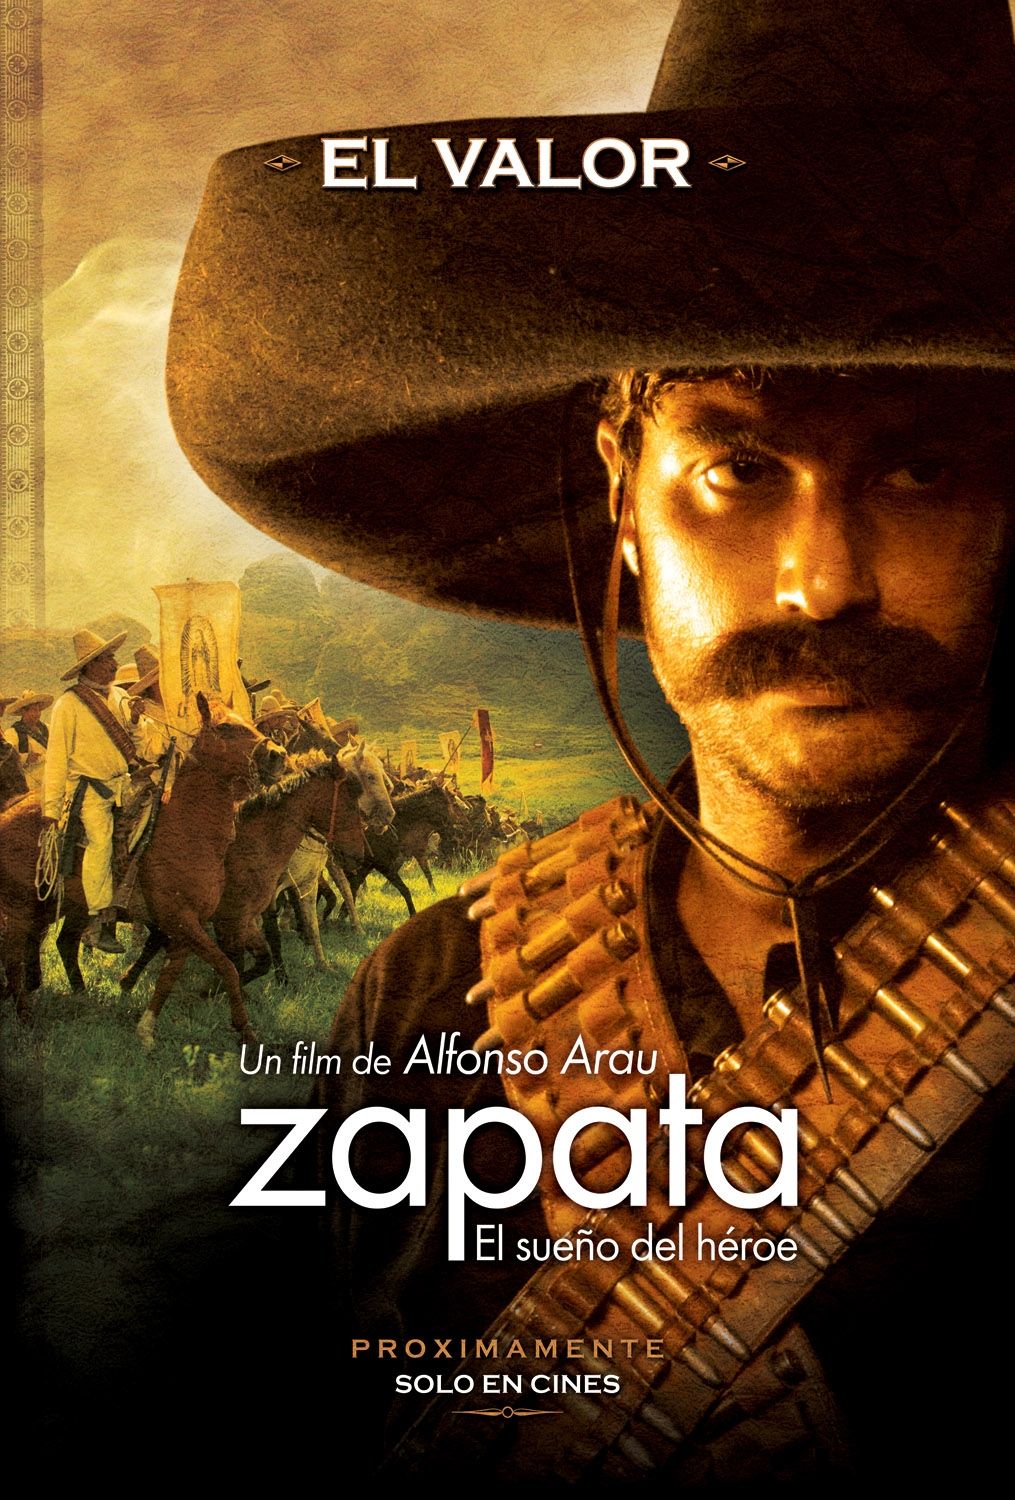 Extra Large Movie Poster Image for Zapata - El sueño del héroe (#2 of 6)